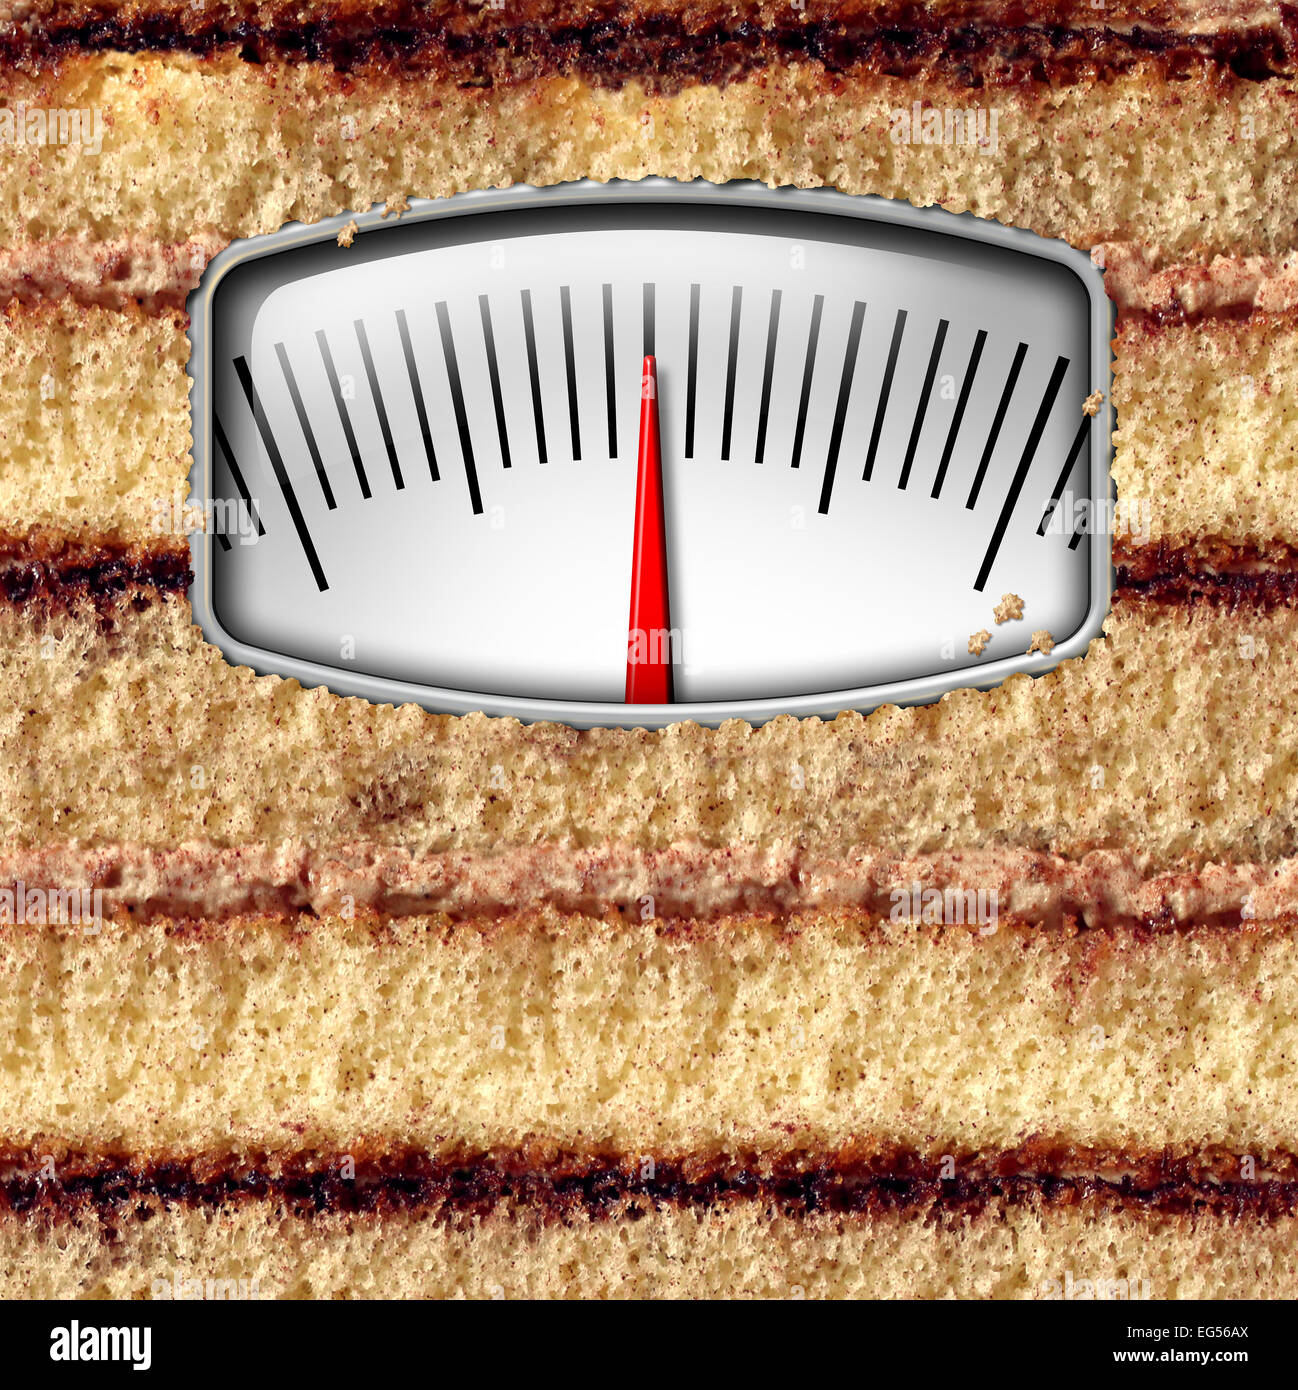 Échelle de poids régime alimentaire concept et de compter les calories comme symbole un gâteau avec un kilogramme ou livre de l'équipement de mesure comme une métaphore de la tentation de manger. Banque D'Images